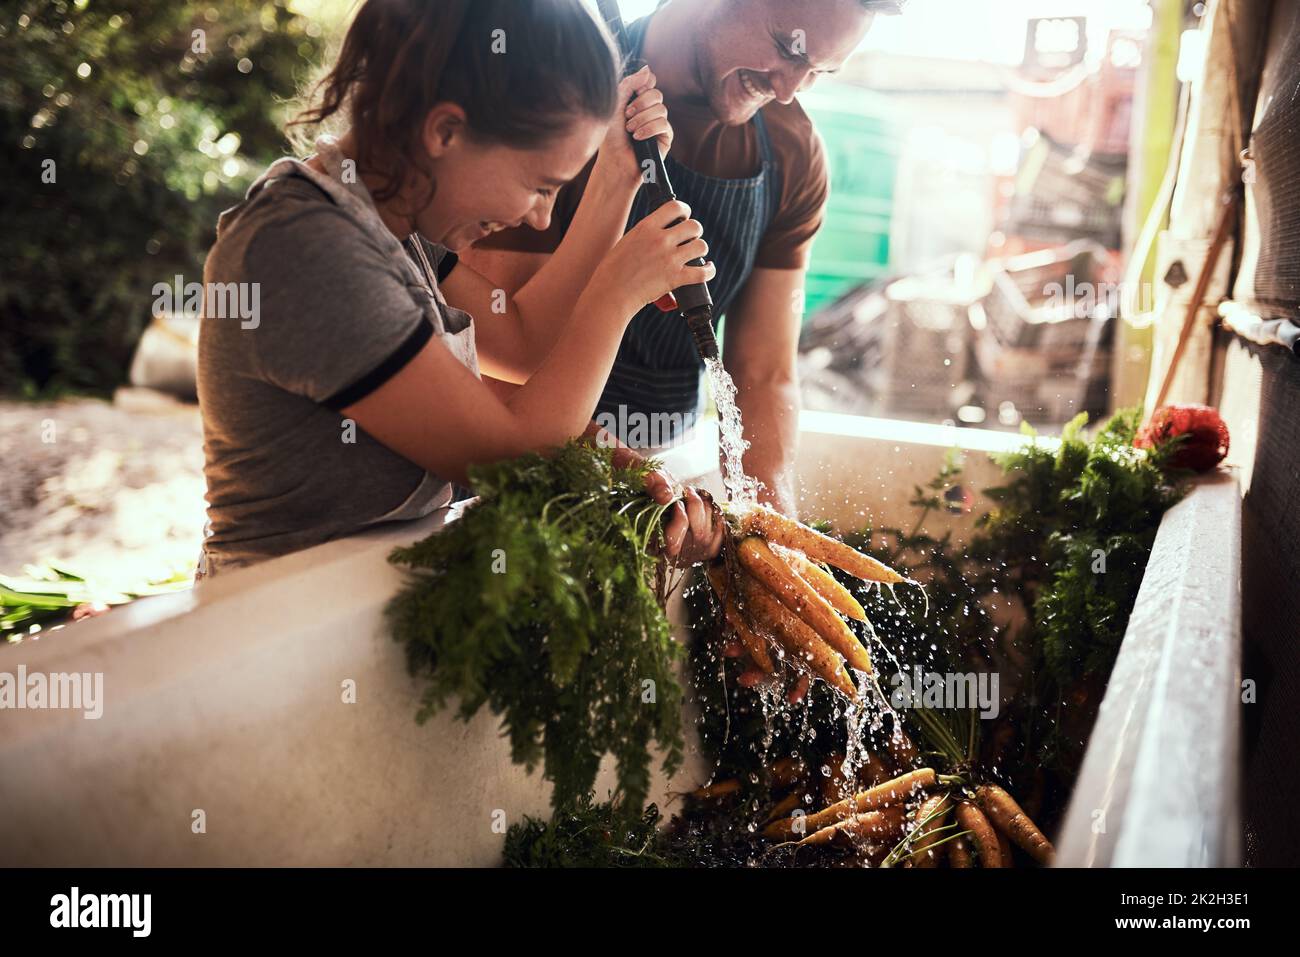 Überschüssige Erde und Bakterien abwaschen. Aufnahme eines glücklichen jungen Paares, das auf seiner Farm einen Haufen frisch gepflückter Karotten putzt und zubereitet. Stockfoto